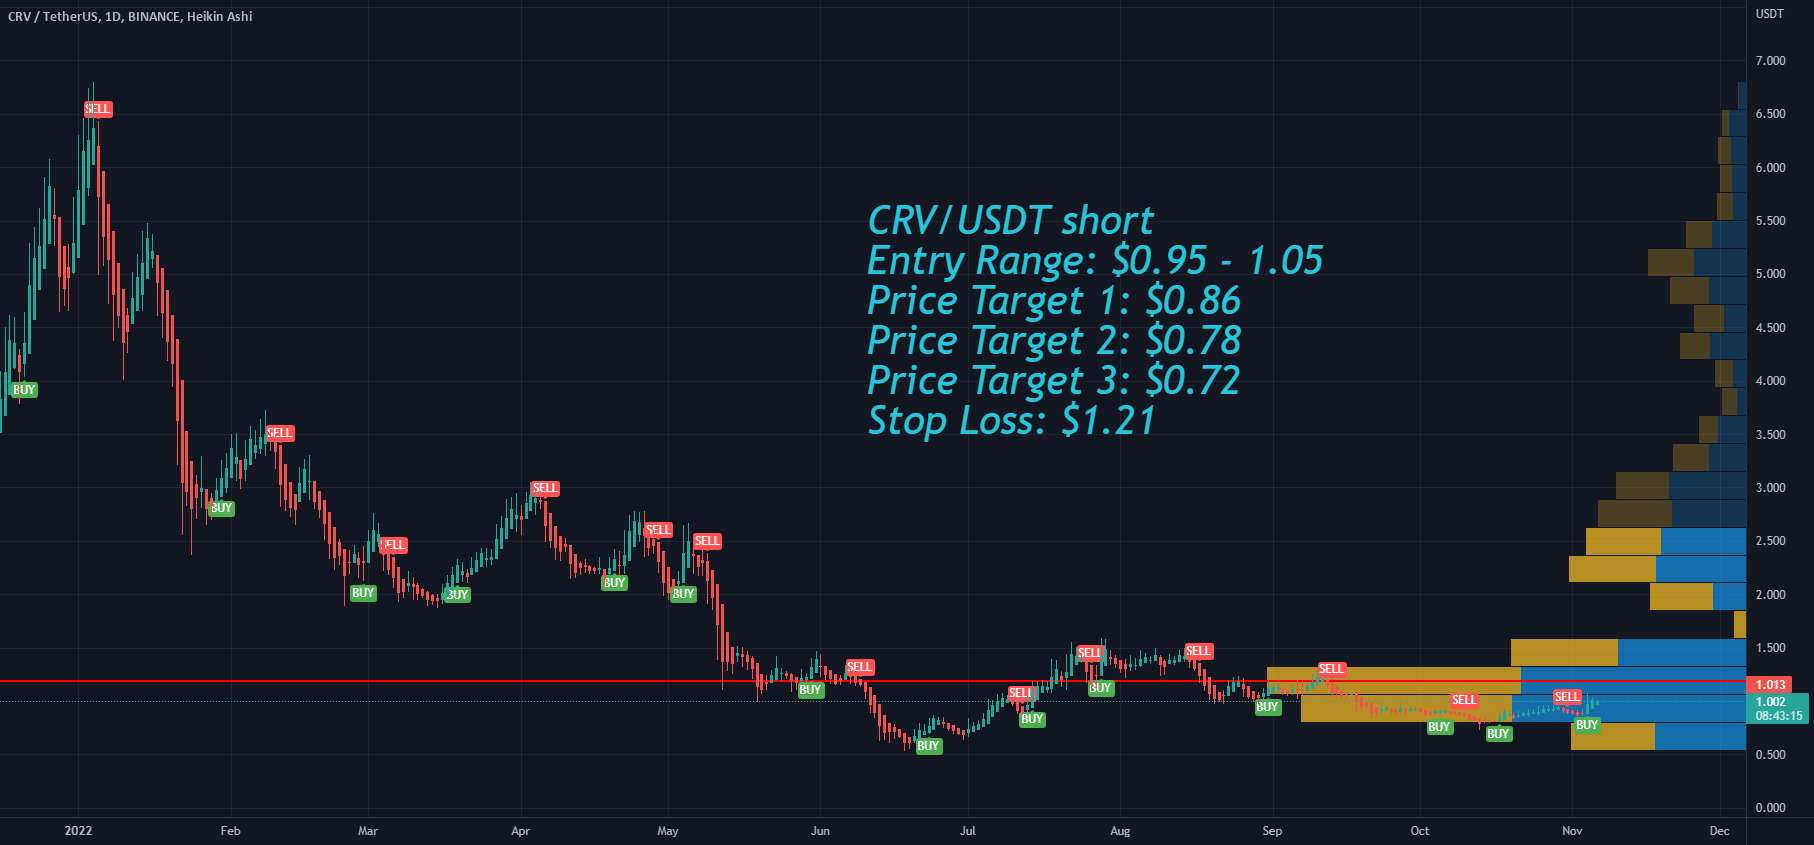  تحلیل کرو داو توکن - منحنی DAO Token CRV Crypto Market بعد از انتخابات